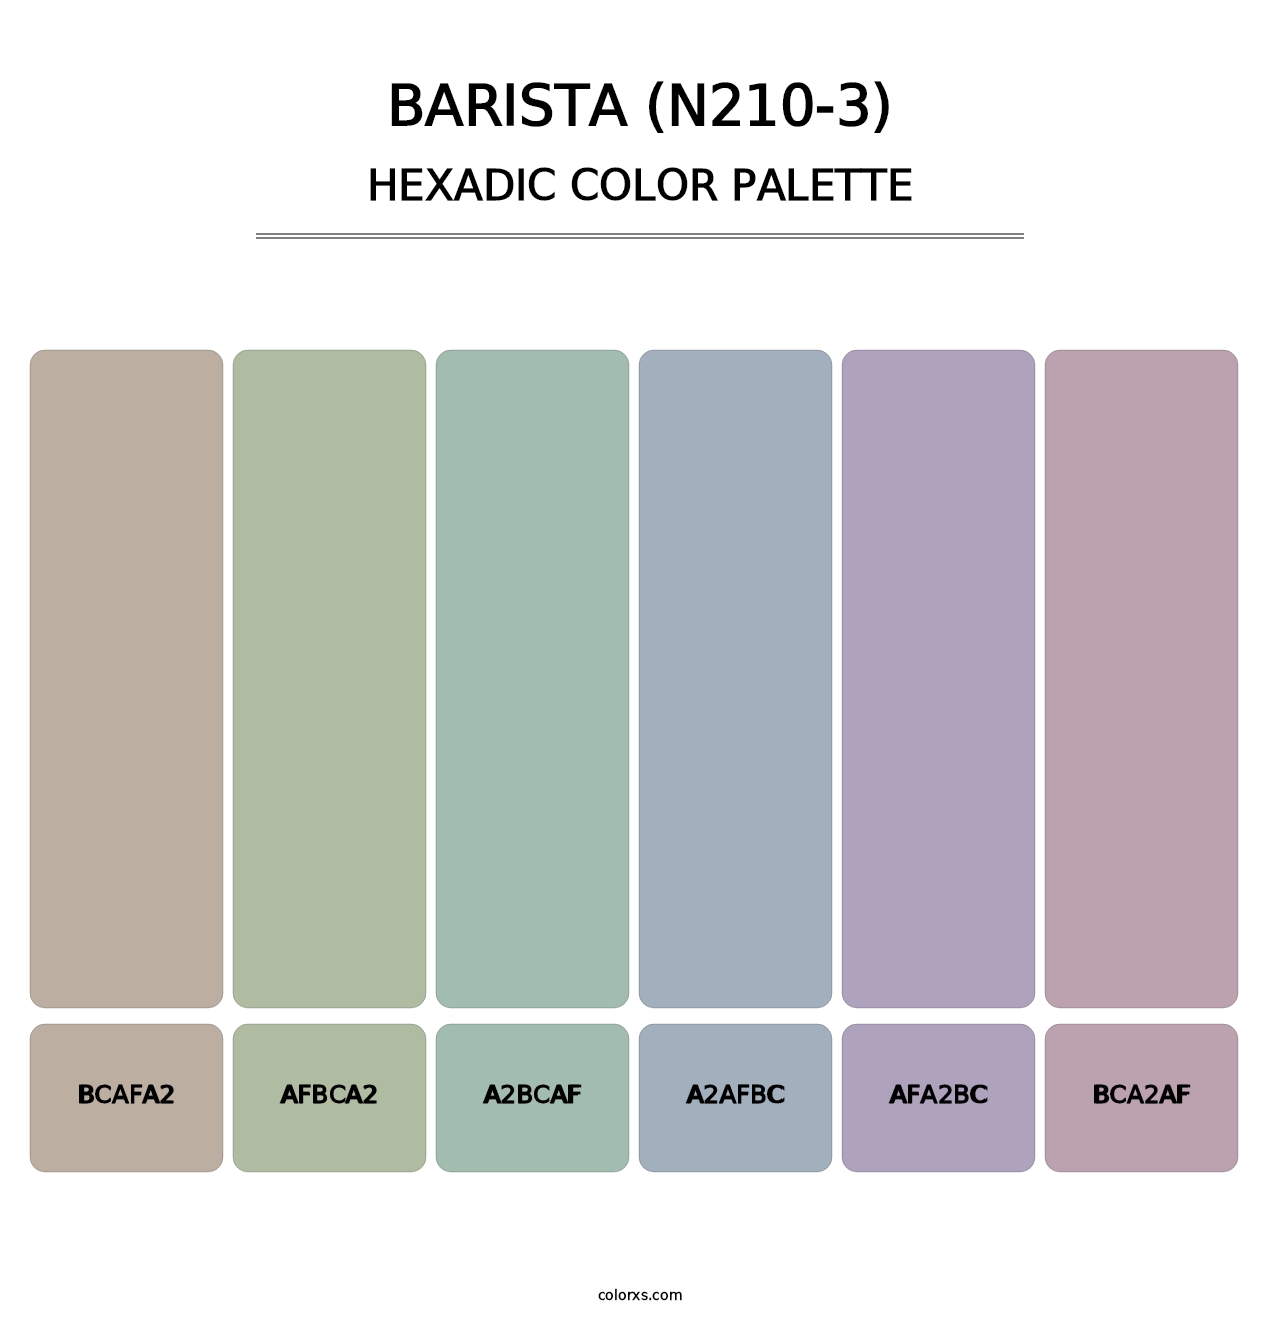 Barista (N210-3) - Hexadic Color Palette